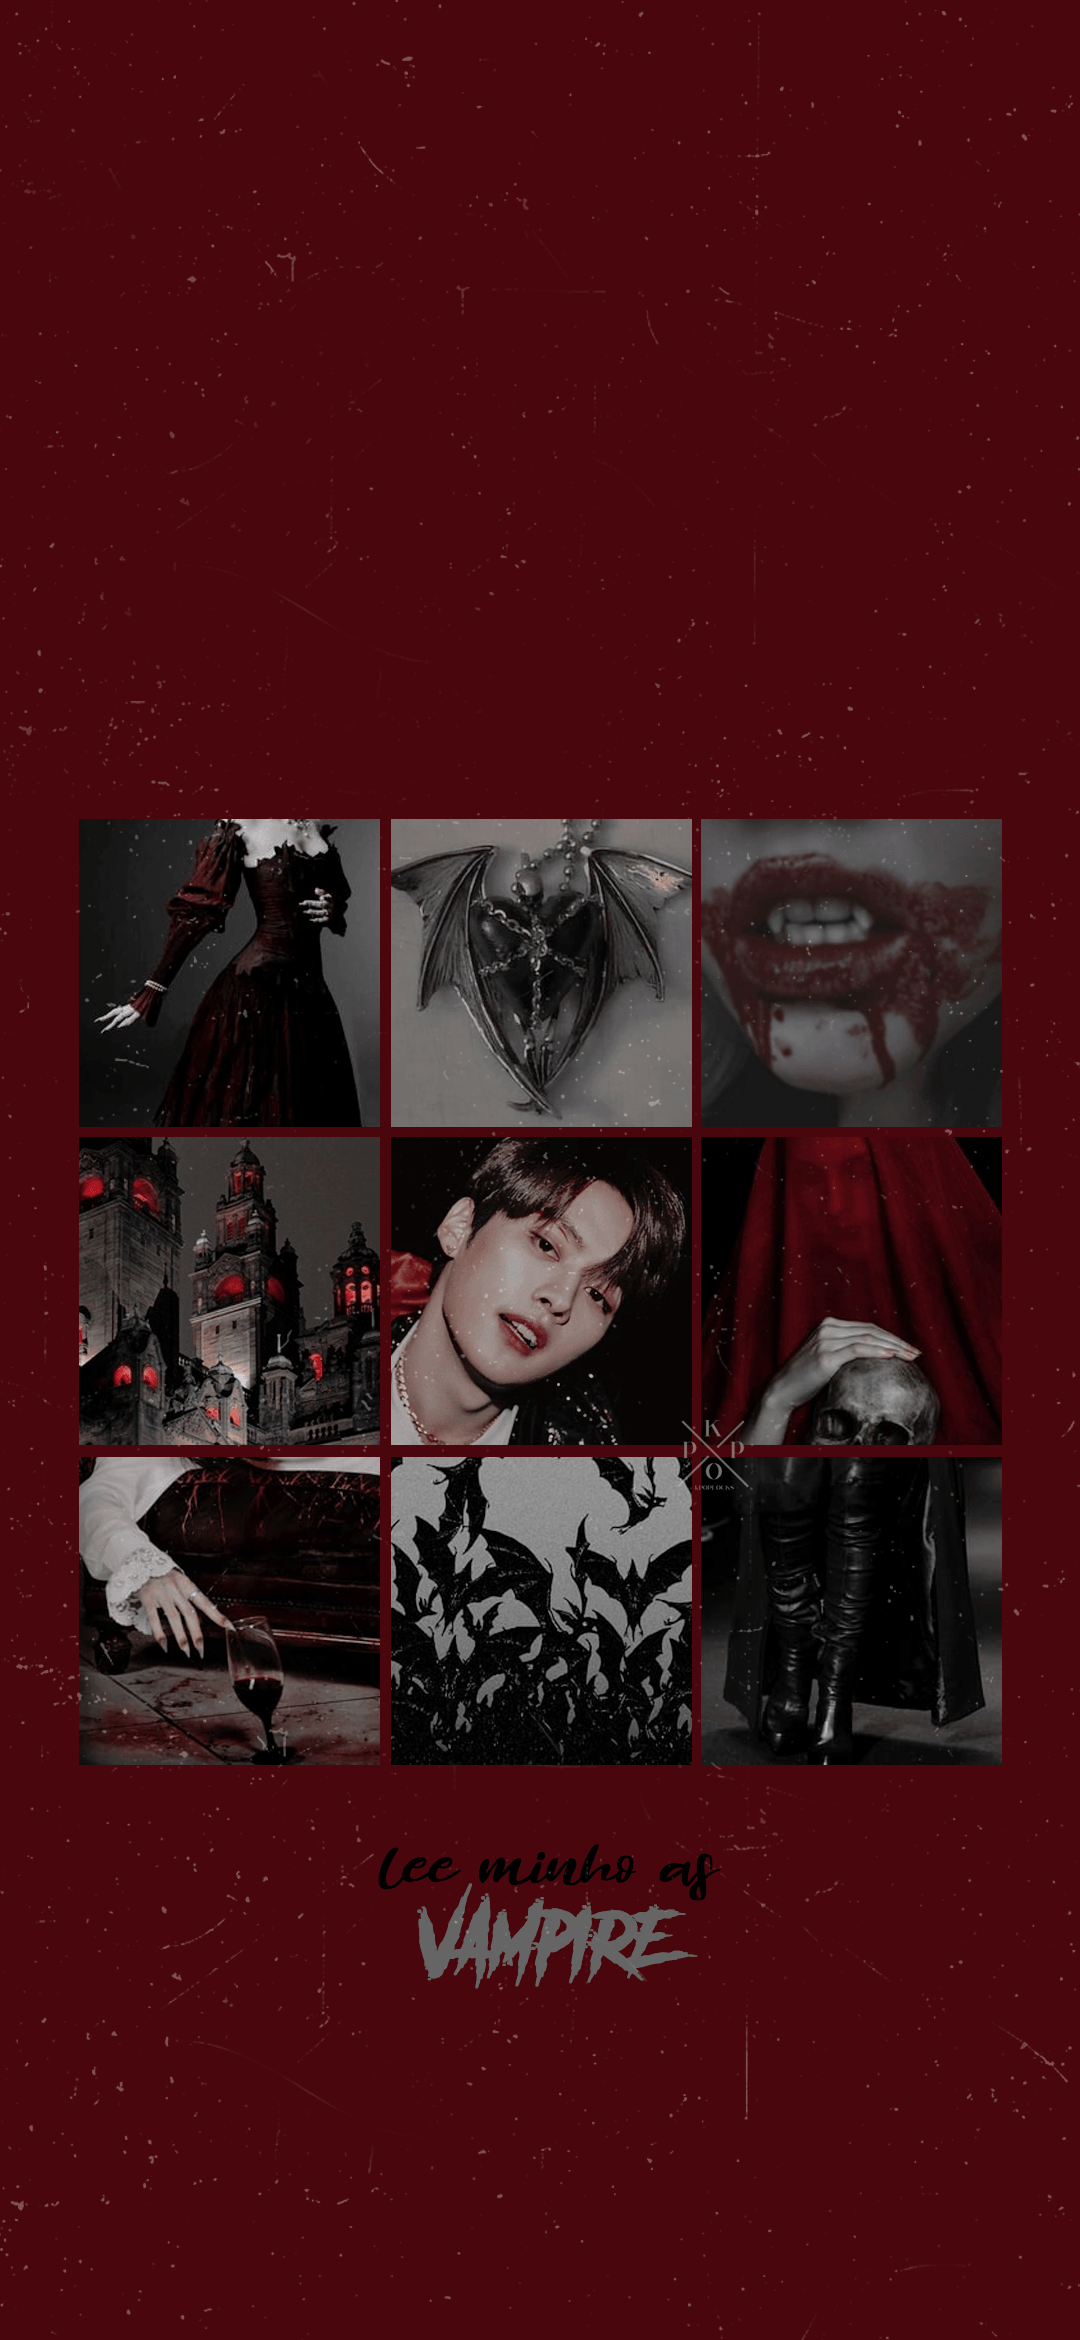 Lee Min Ho as a vampire - Vampire